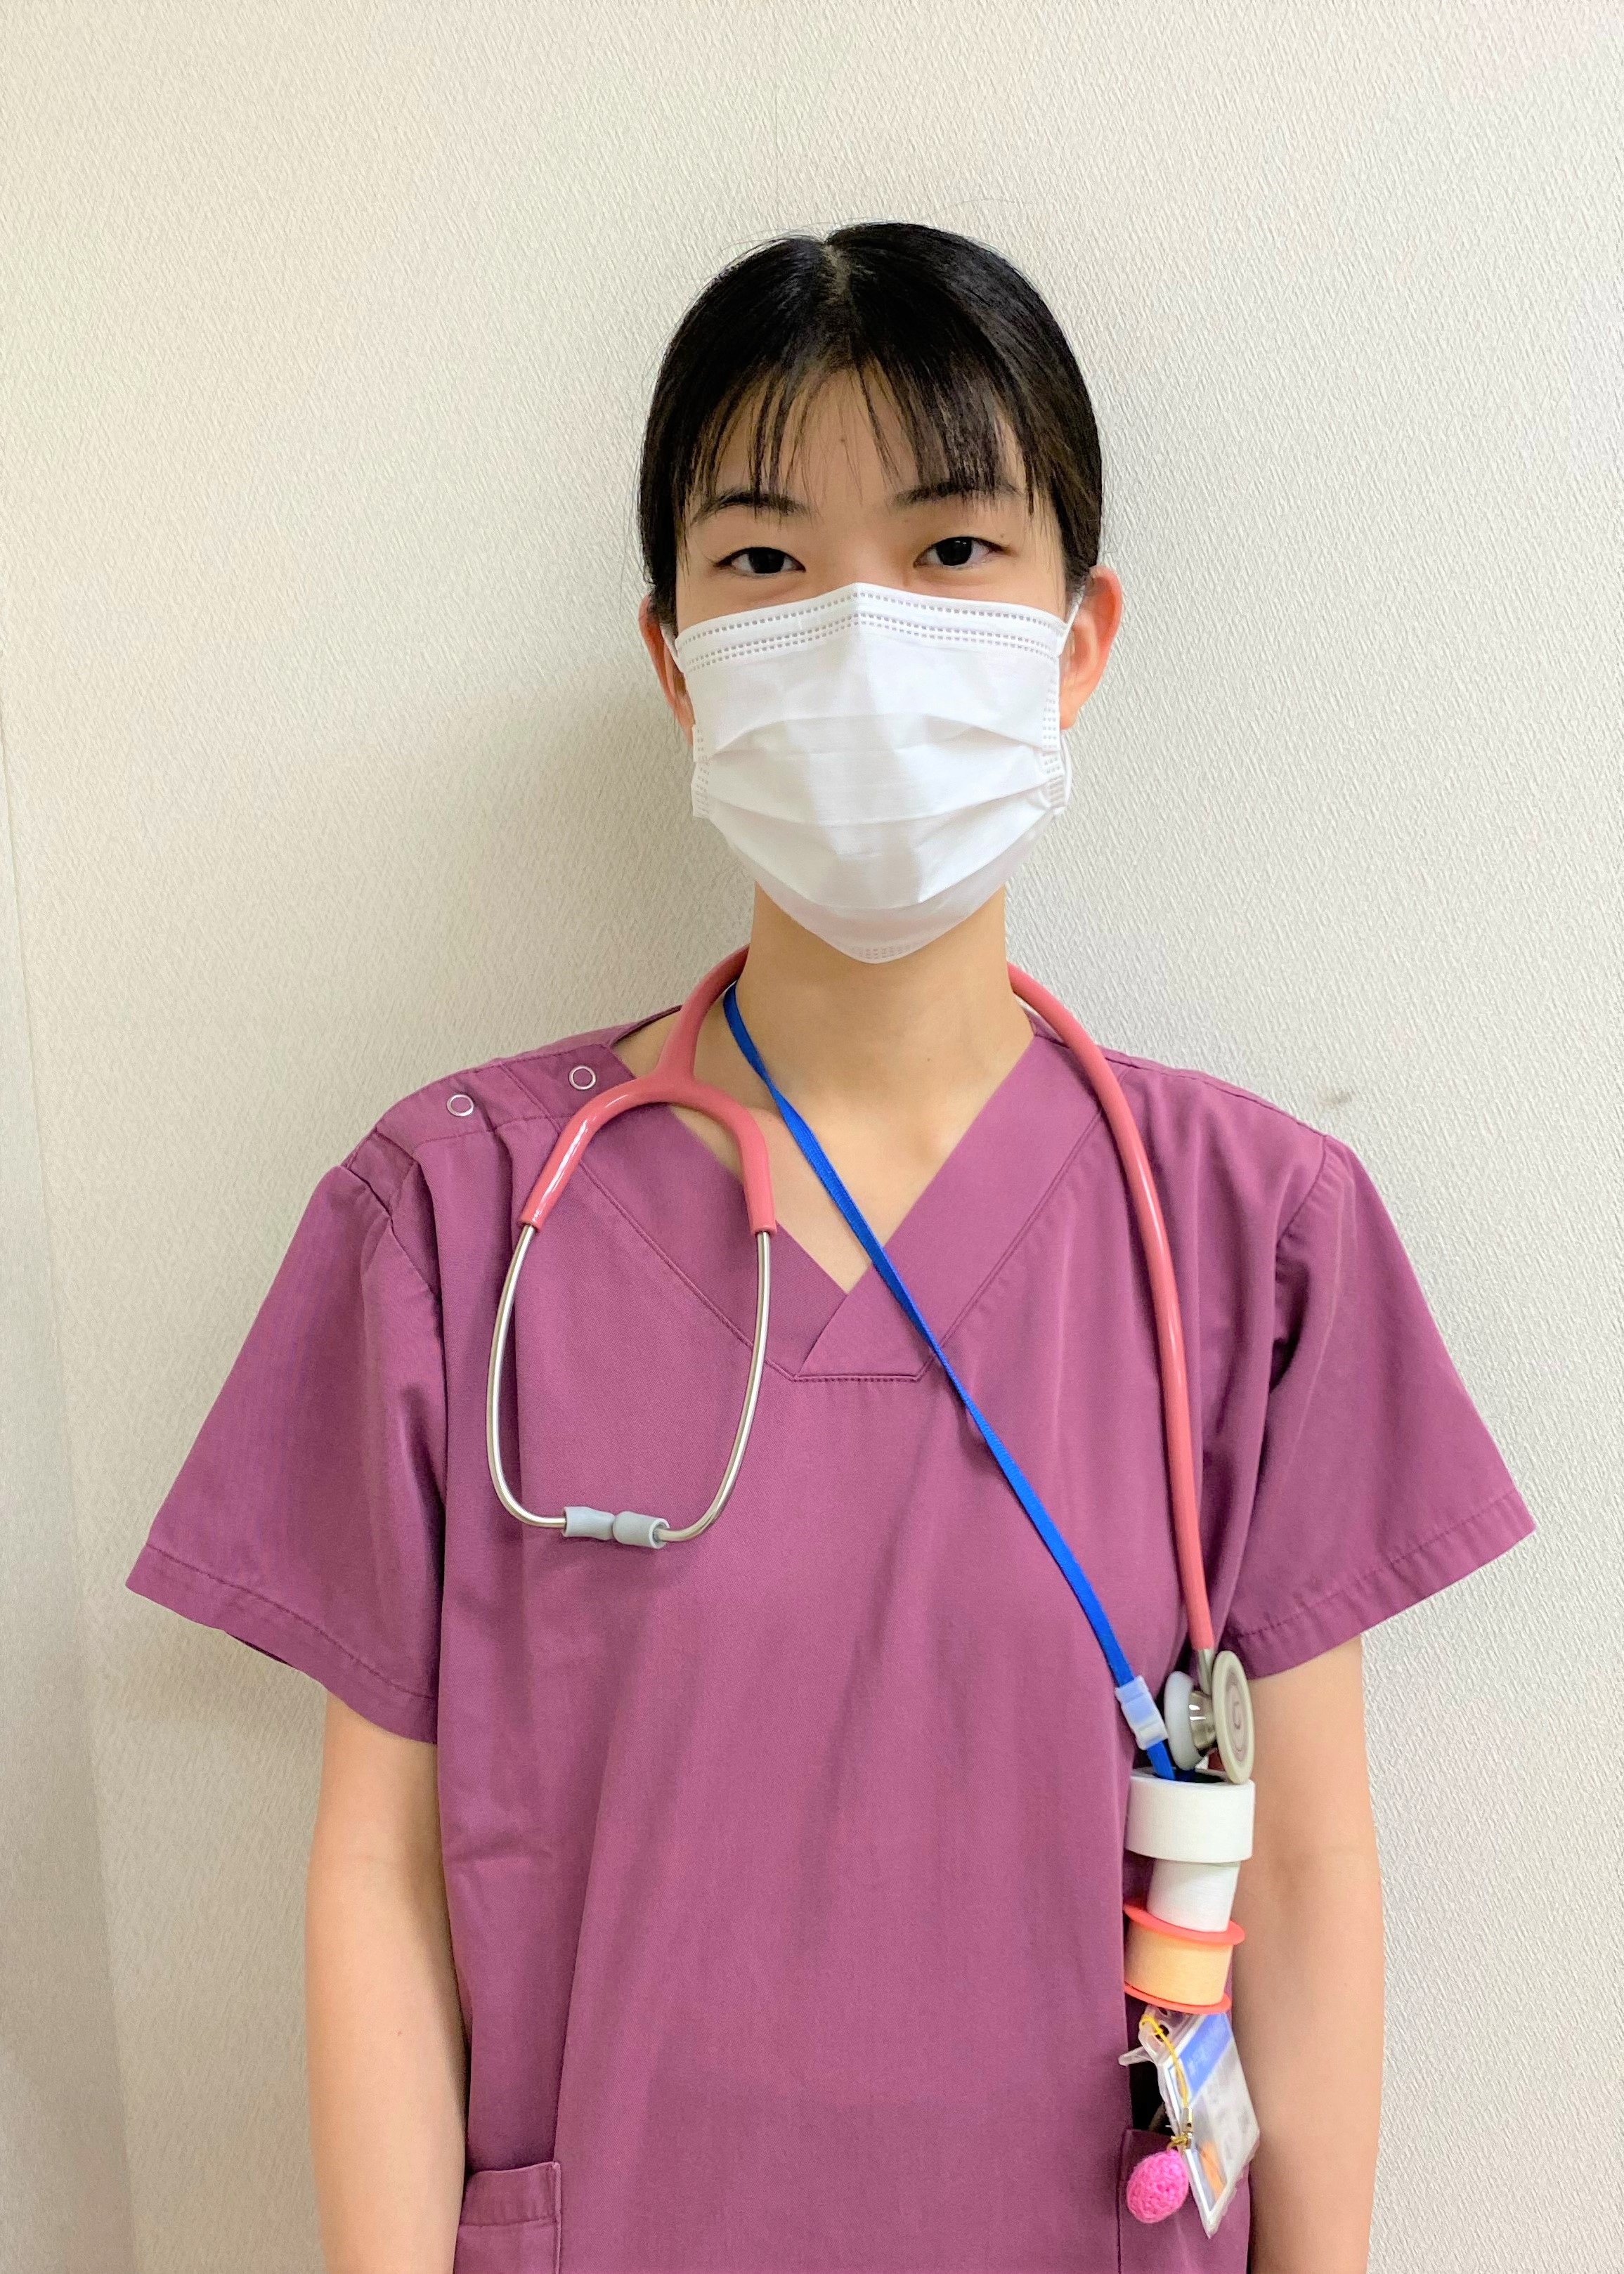 神戸看護専門学校 卒業生の活躍